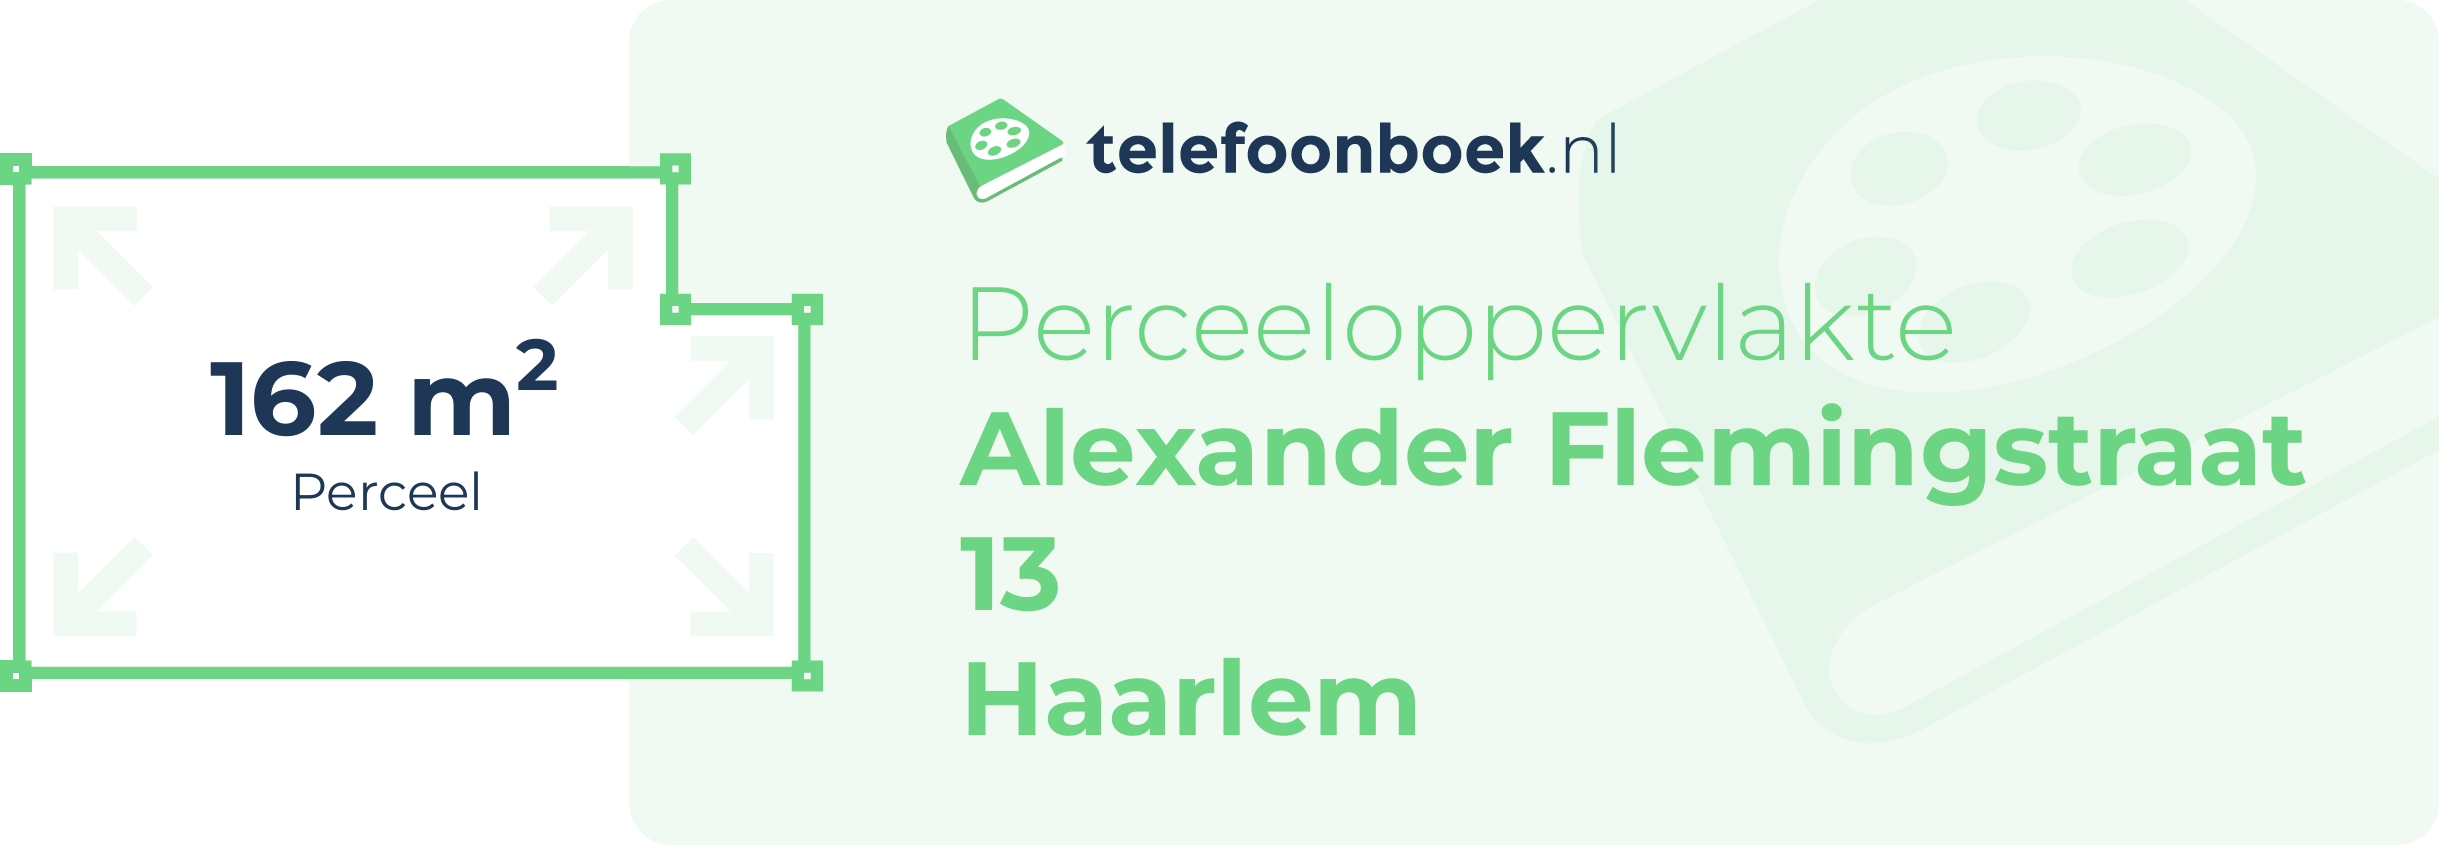 Perceeloppervlakte Alexander Flemingstraat 13 Haarlem